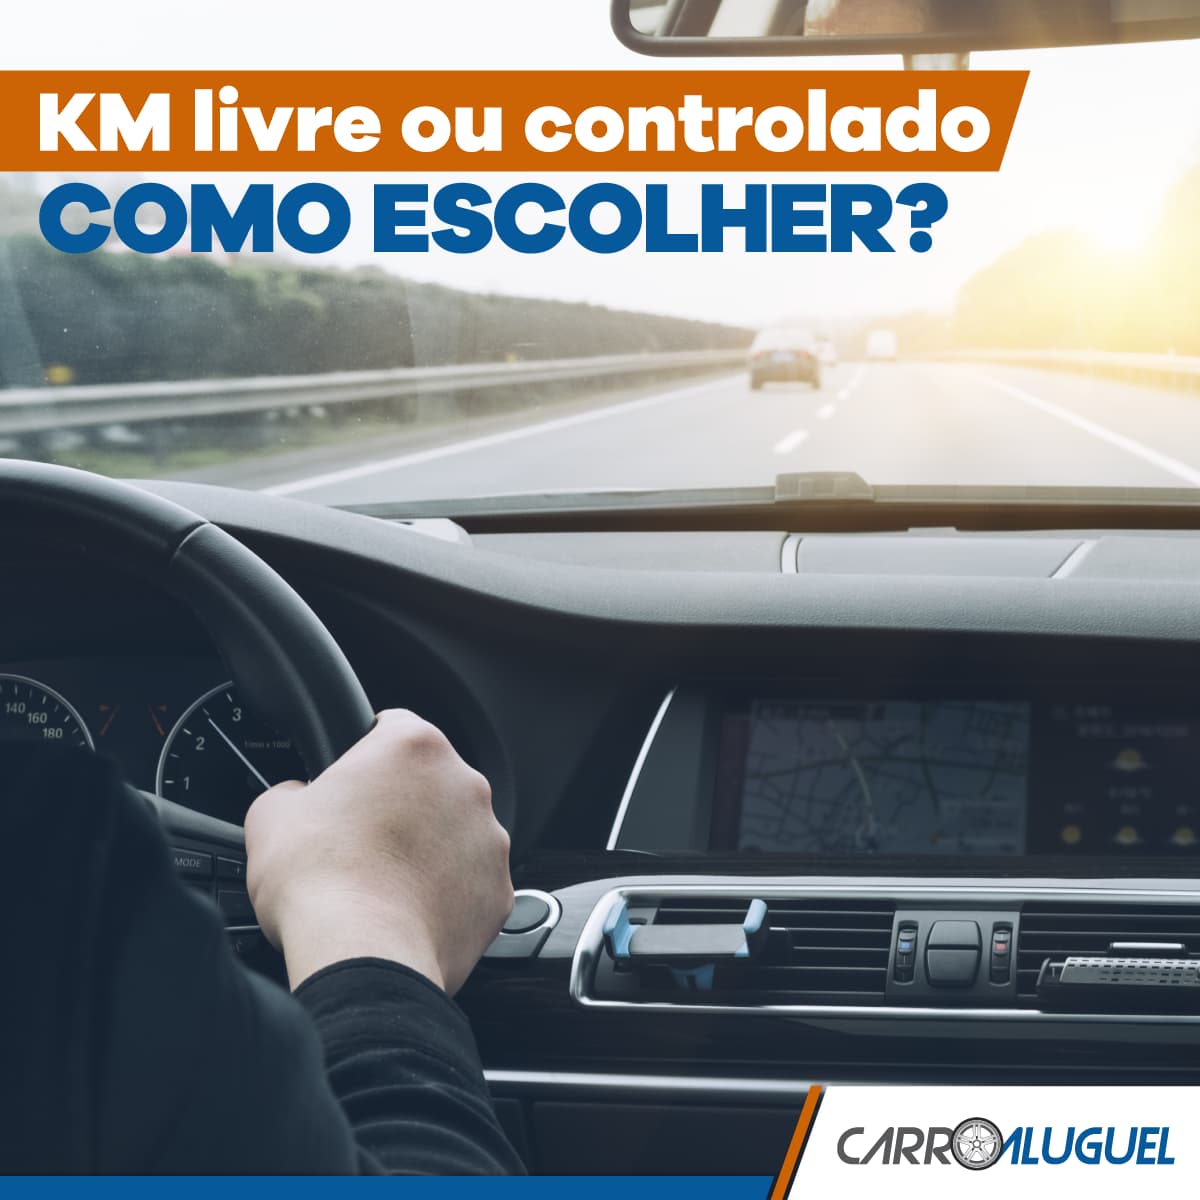 Imagem de uma mão ao volante, com o título: KM livre ou controlado como escolher?